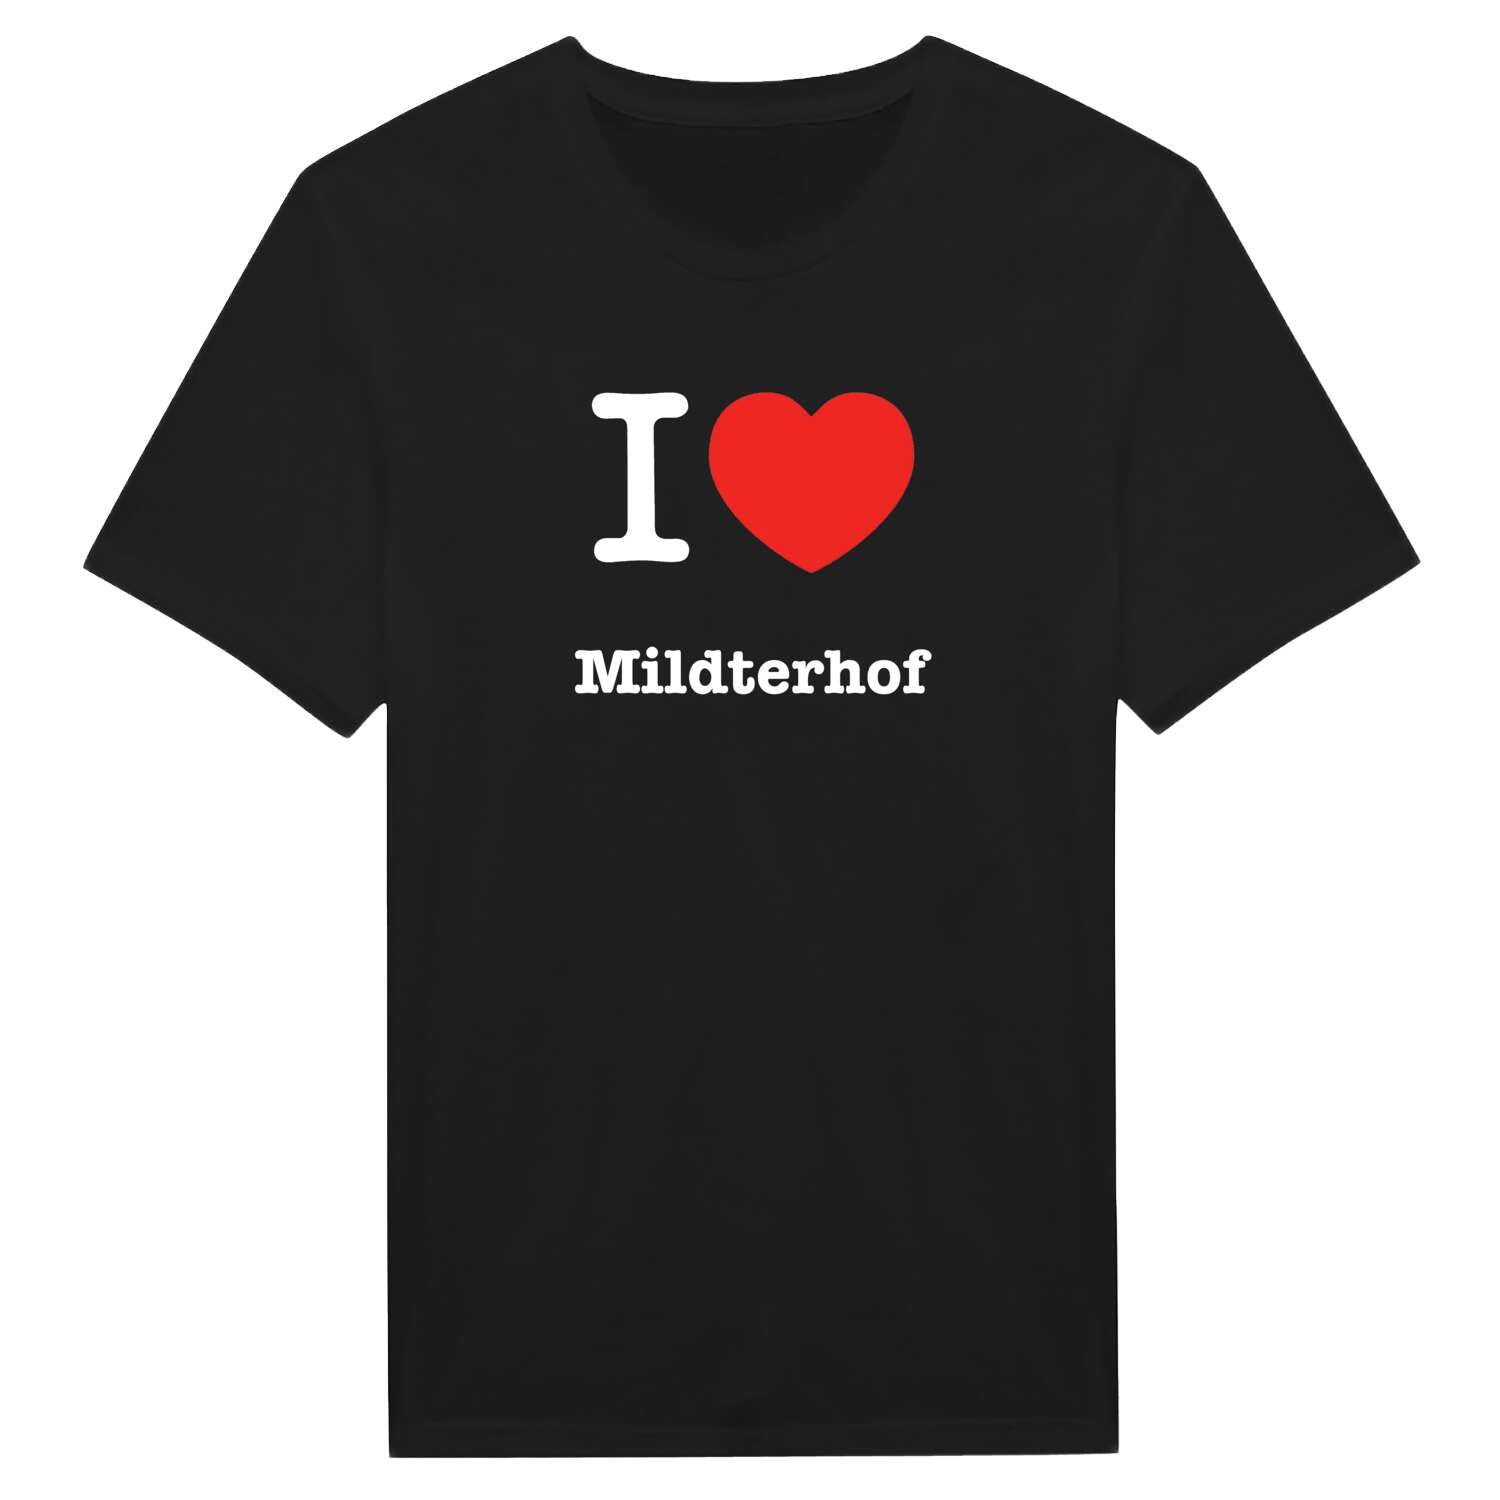 Mildterhof T-Shirt »I love«